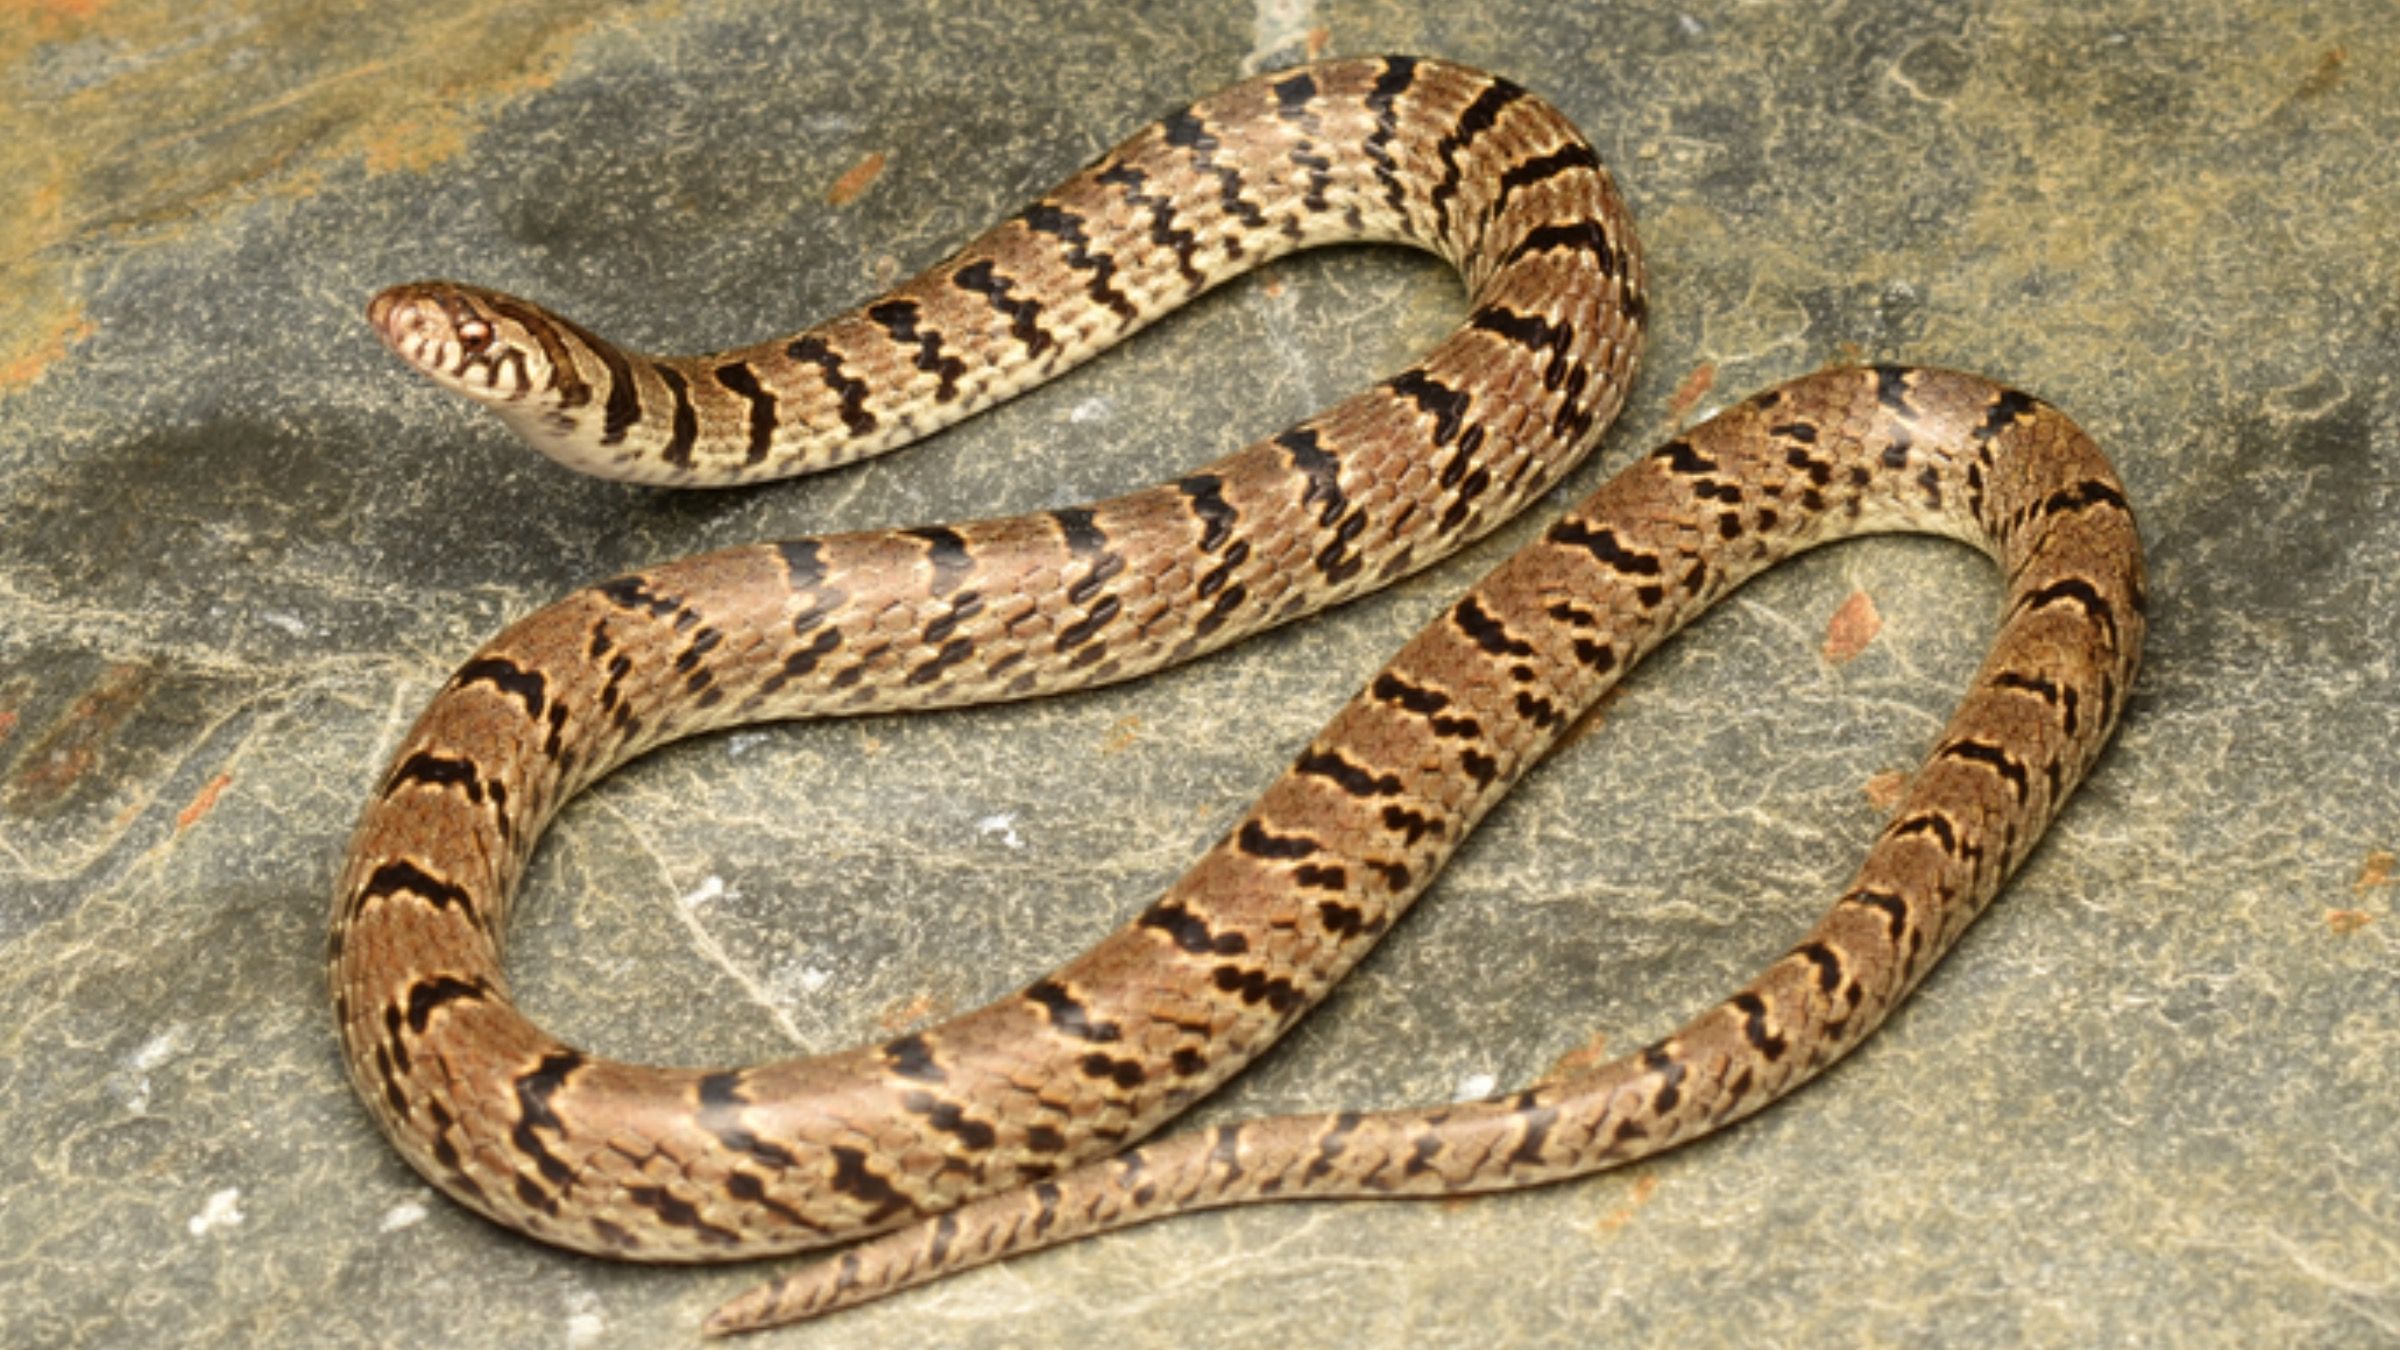 Ученые открыли новый вид змей, благодаря фото в инстаграм: видео с рептилией - Pets